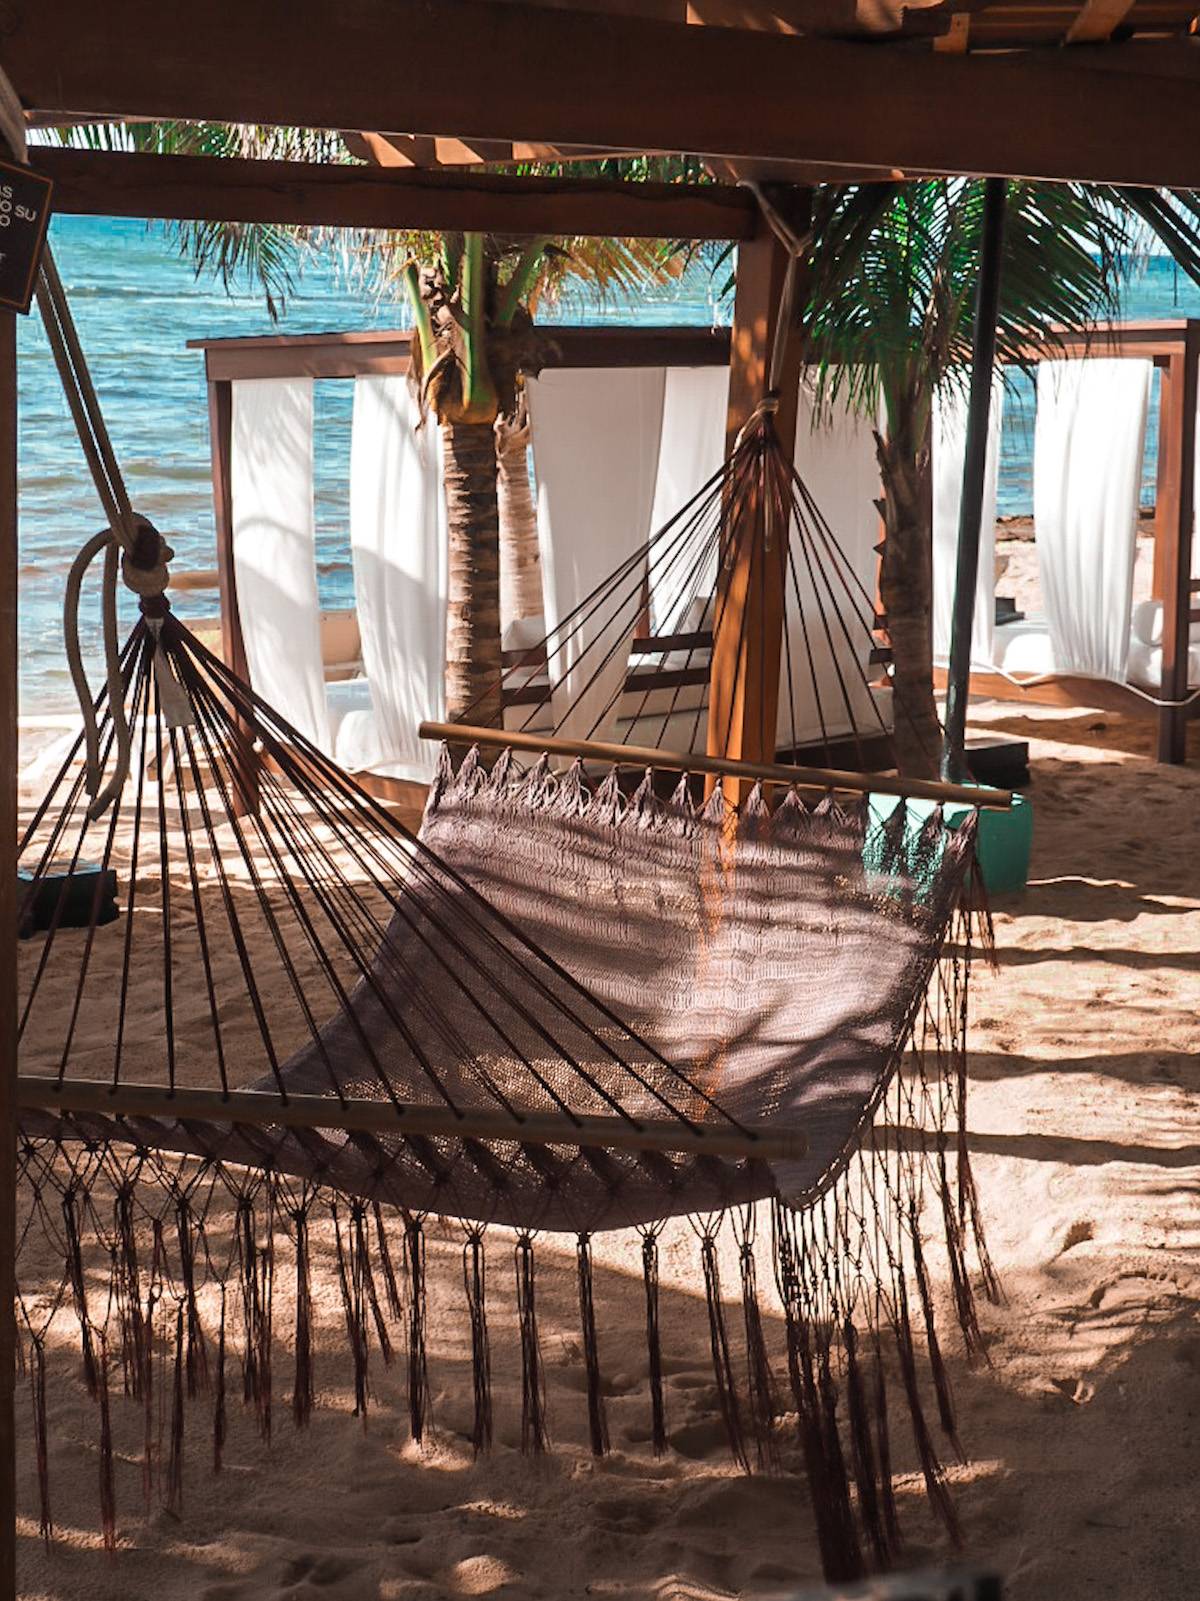 Hammocks at El Dorado Seaside Suites in Mexico